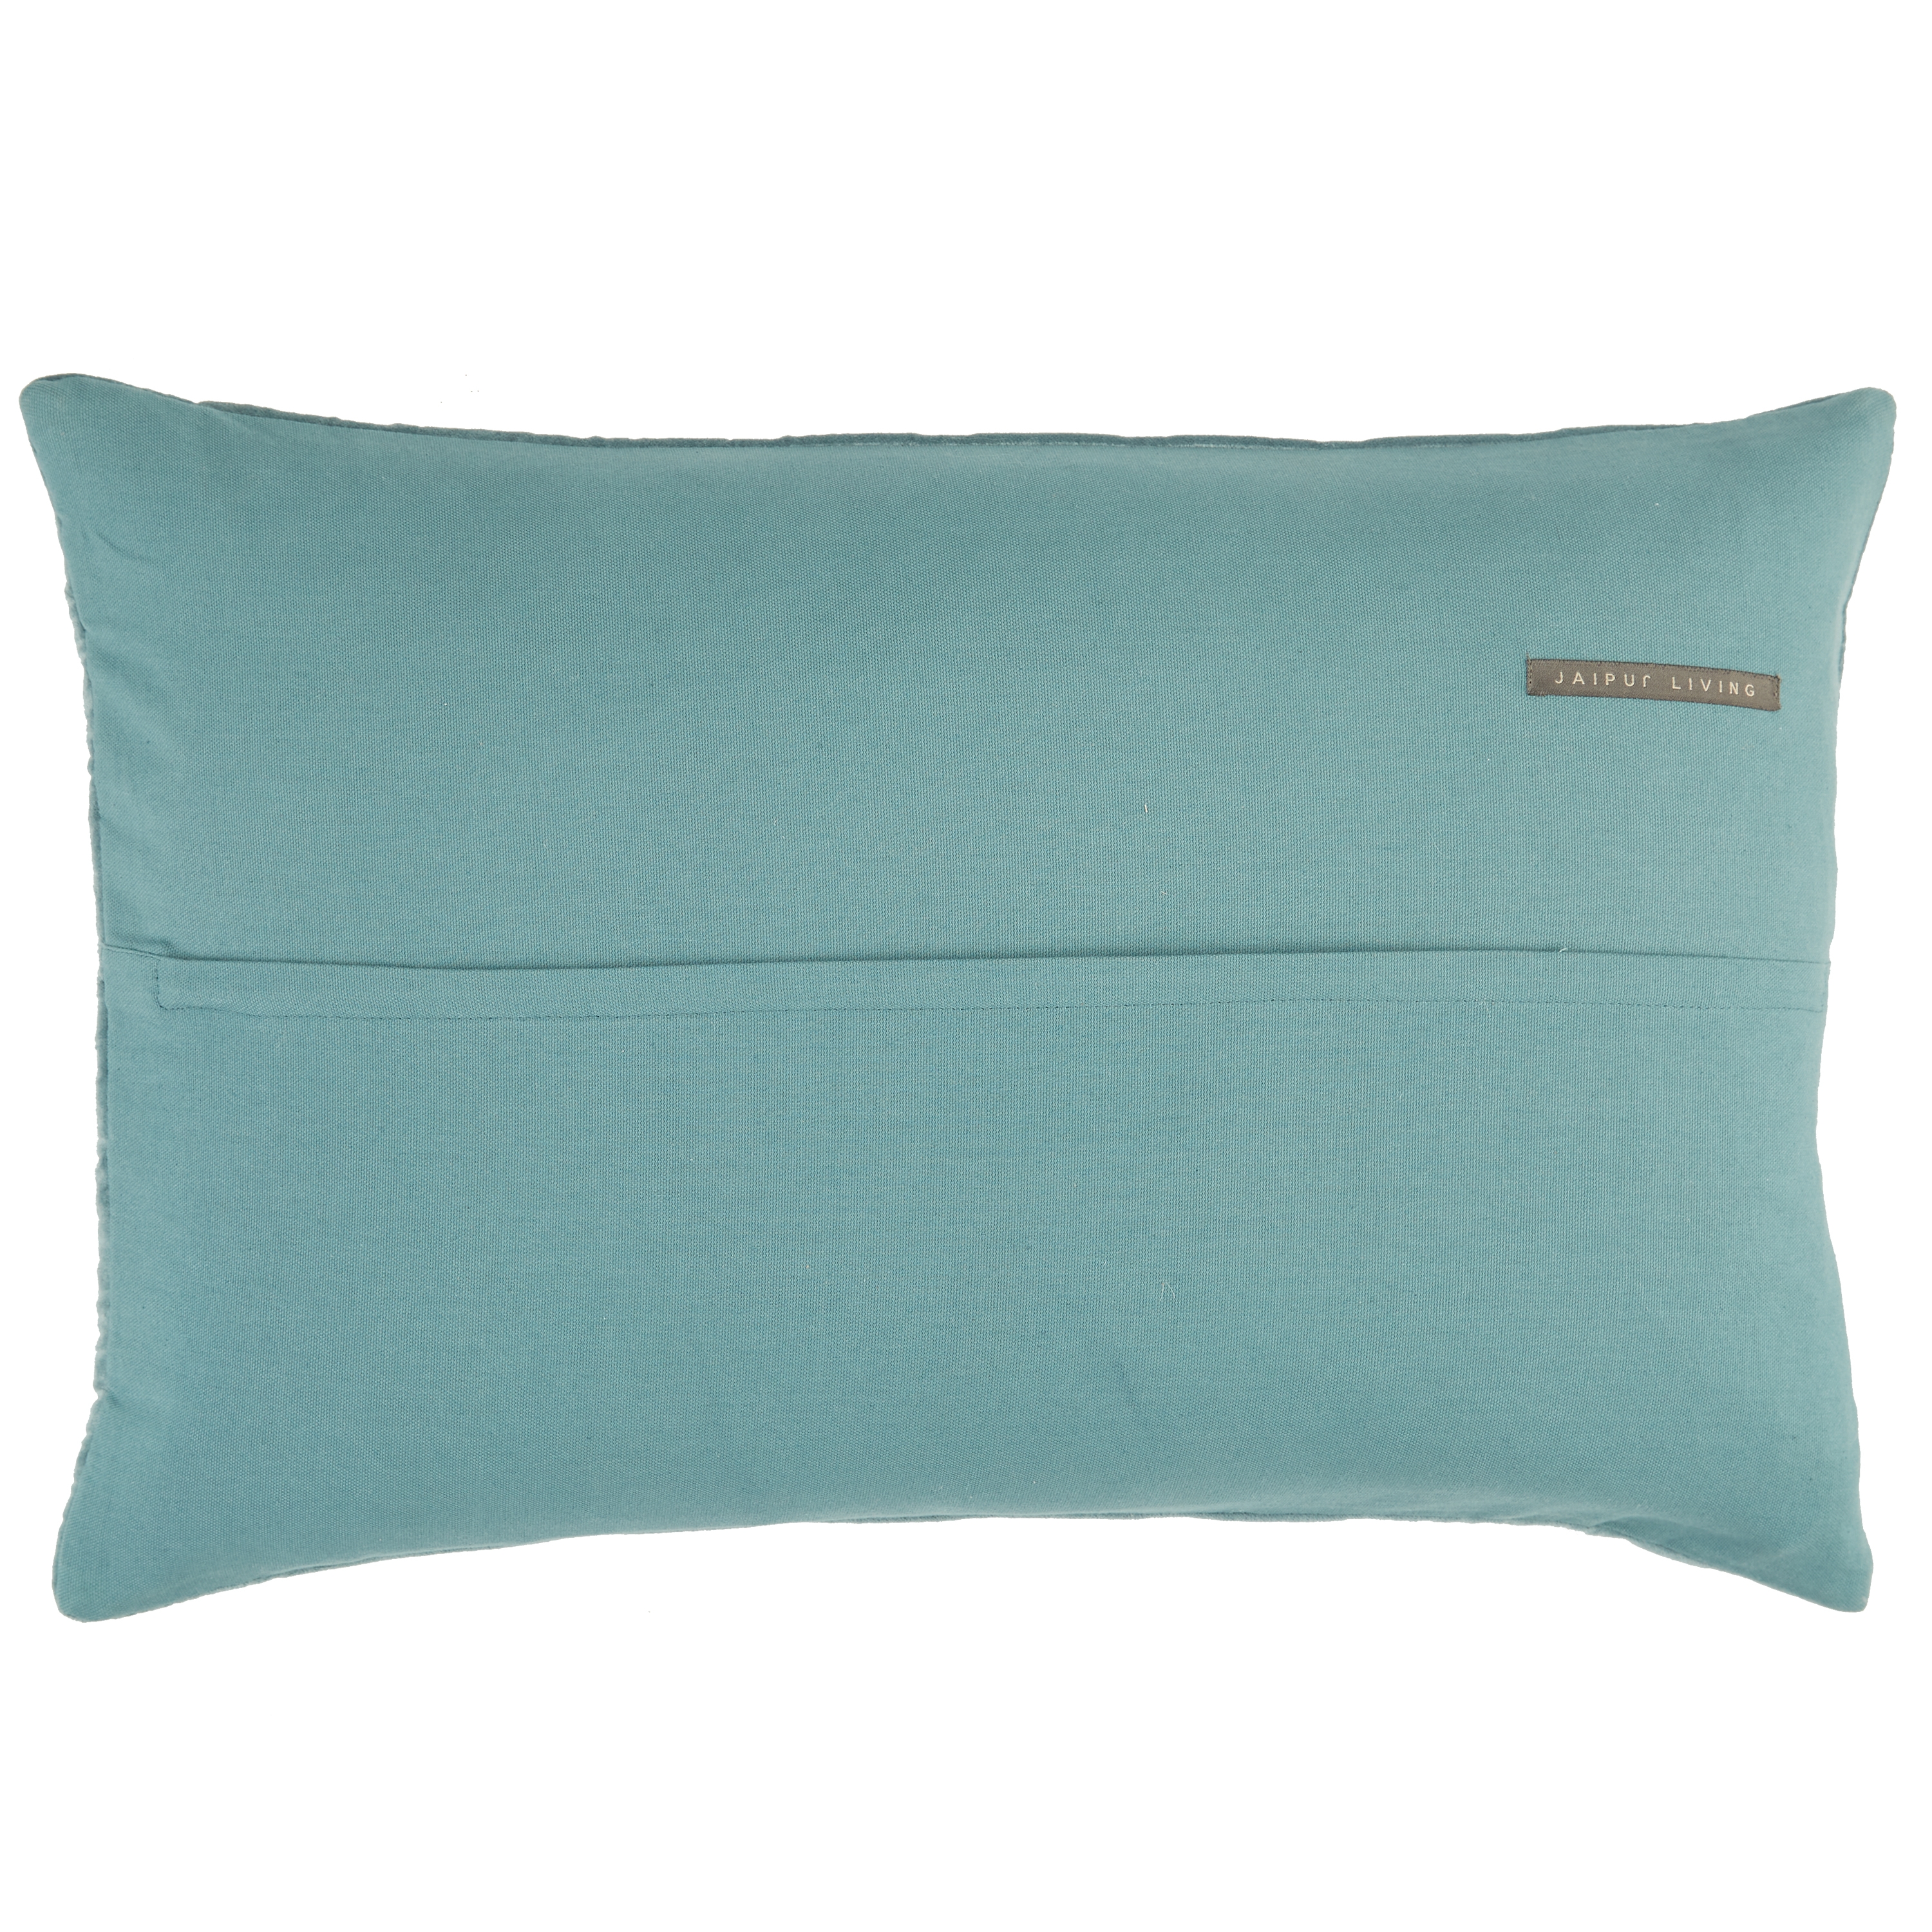 Design (US) Blue 16"X24" Pillow - Image 1